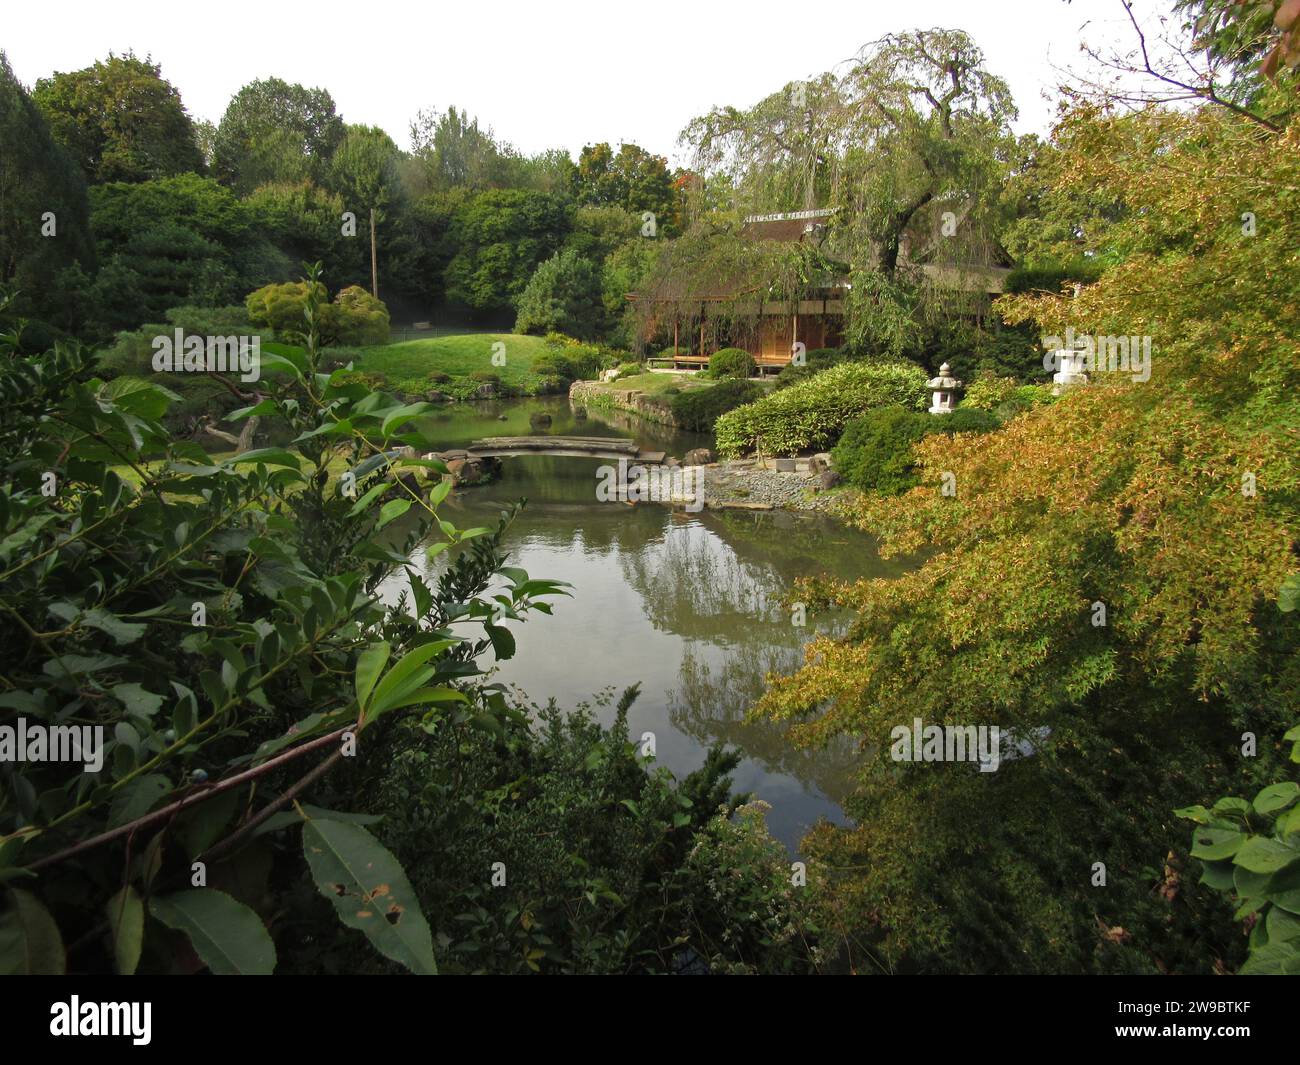 Shofuso Japanese House in Philadelphias Fairmount Park, einem historischen Wahrzeichen, das 1953 erbaut wurde und einem japanischen Haus und Garten aus dem 17. Jahrhundert nachempfunden ist. Stockfoto